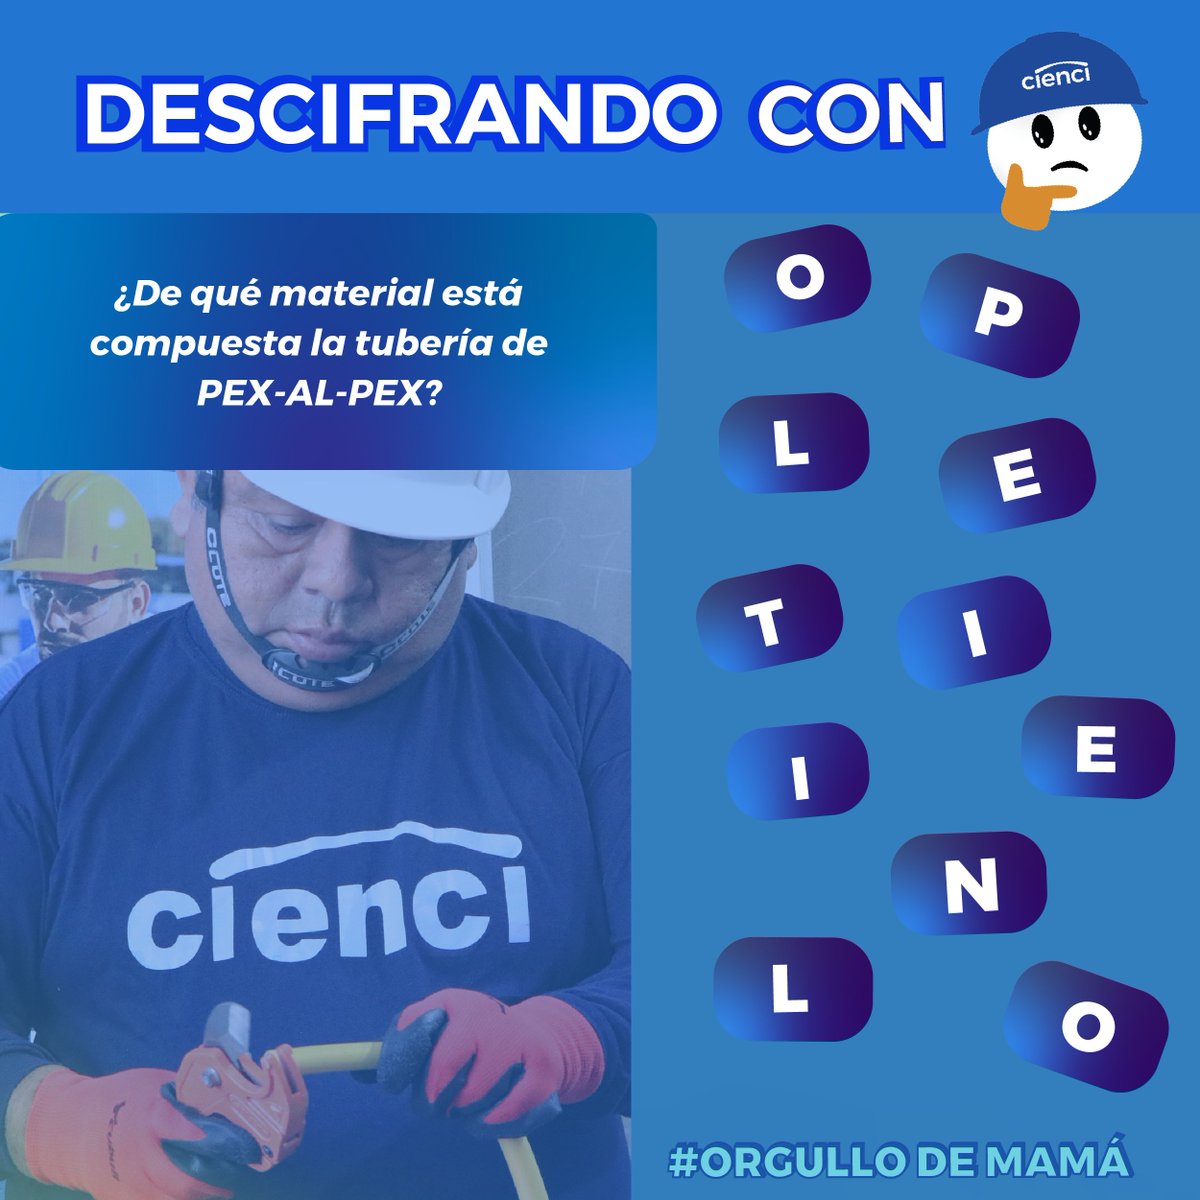 En este mes conviértete en él #orgullodemamá
DESCIFRANDO CON CIENCI🙌🧐
📢¿De qué material está compuesta la tubería de PEX-AL-PEX?

#TriviaTime #perú2024 #InstalaciónDeGasNatural #capacitación  ⛽